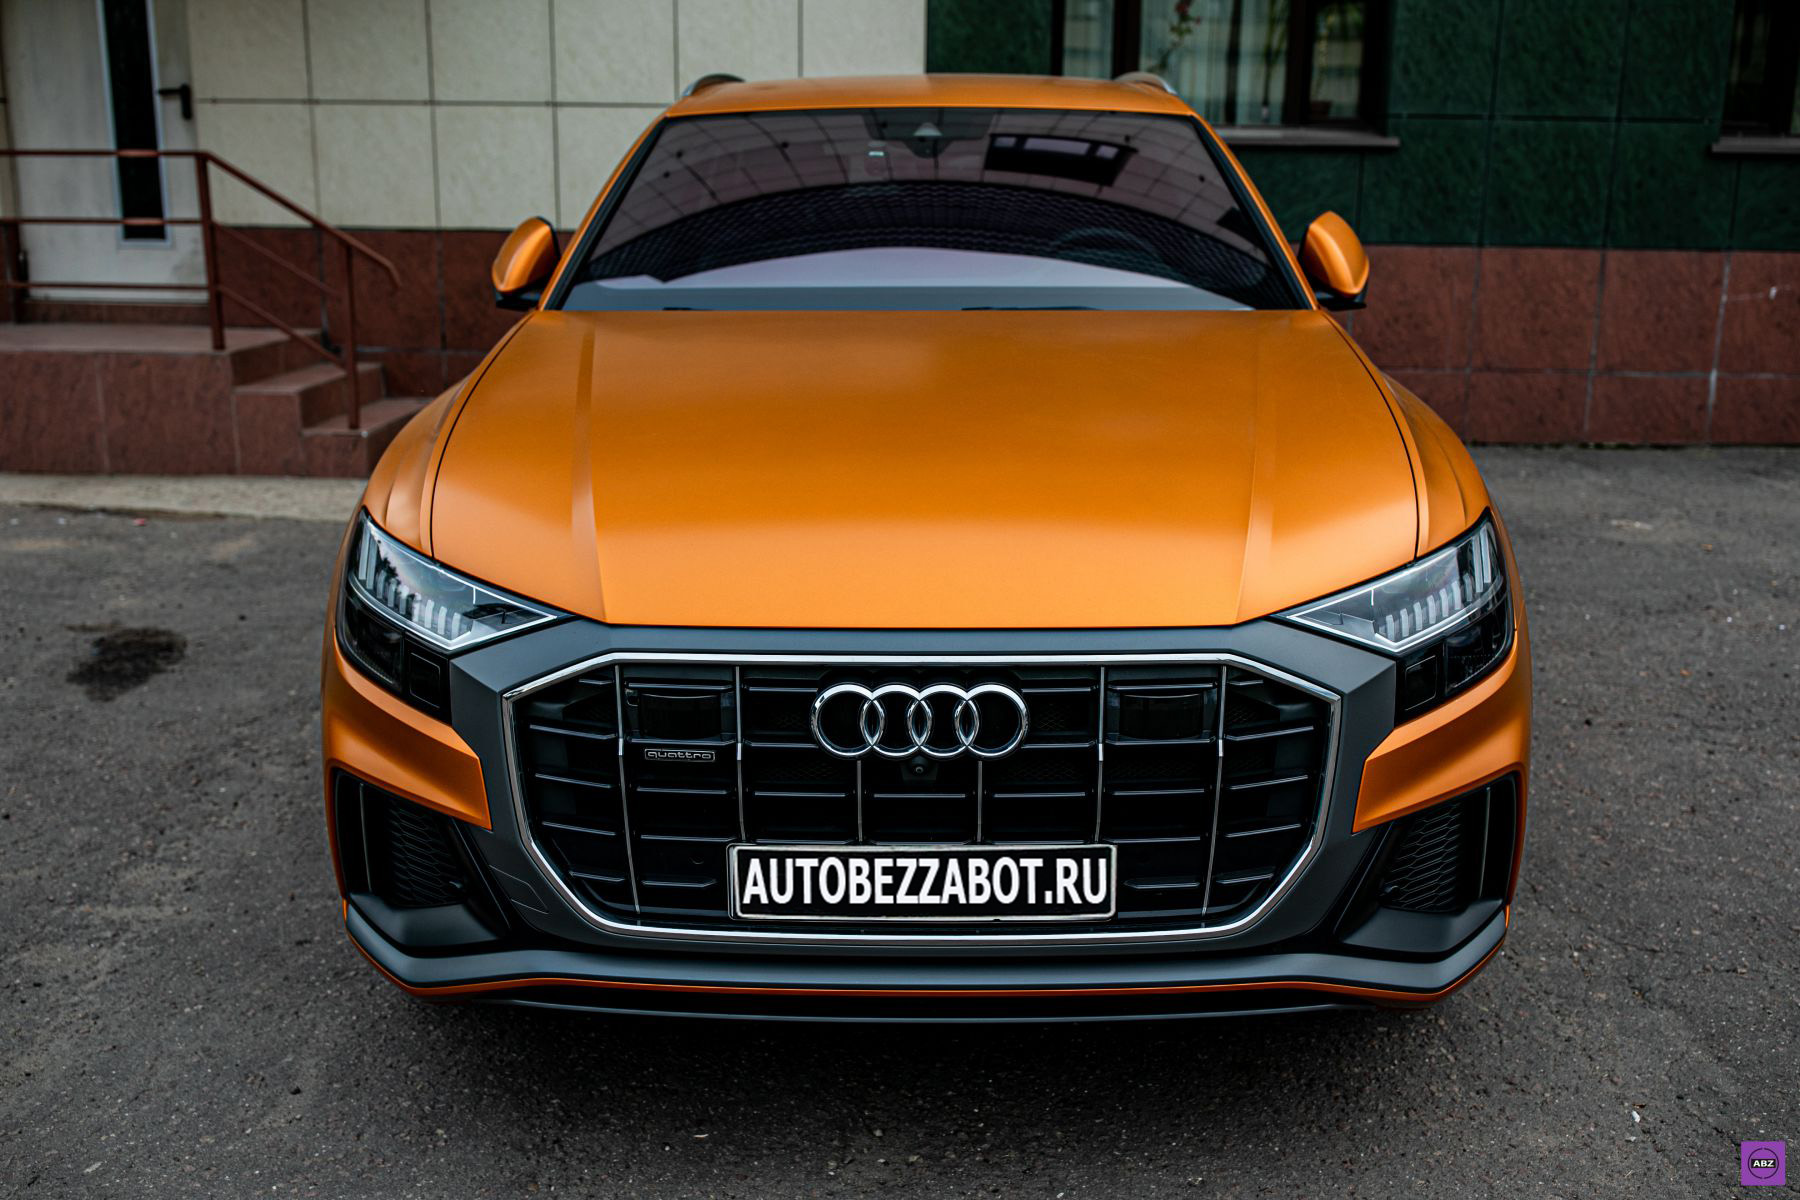 Фото Audi Q8 в цвете Dragon Orange — заменили глянец на мат